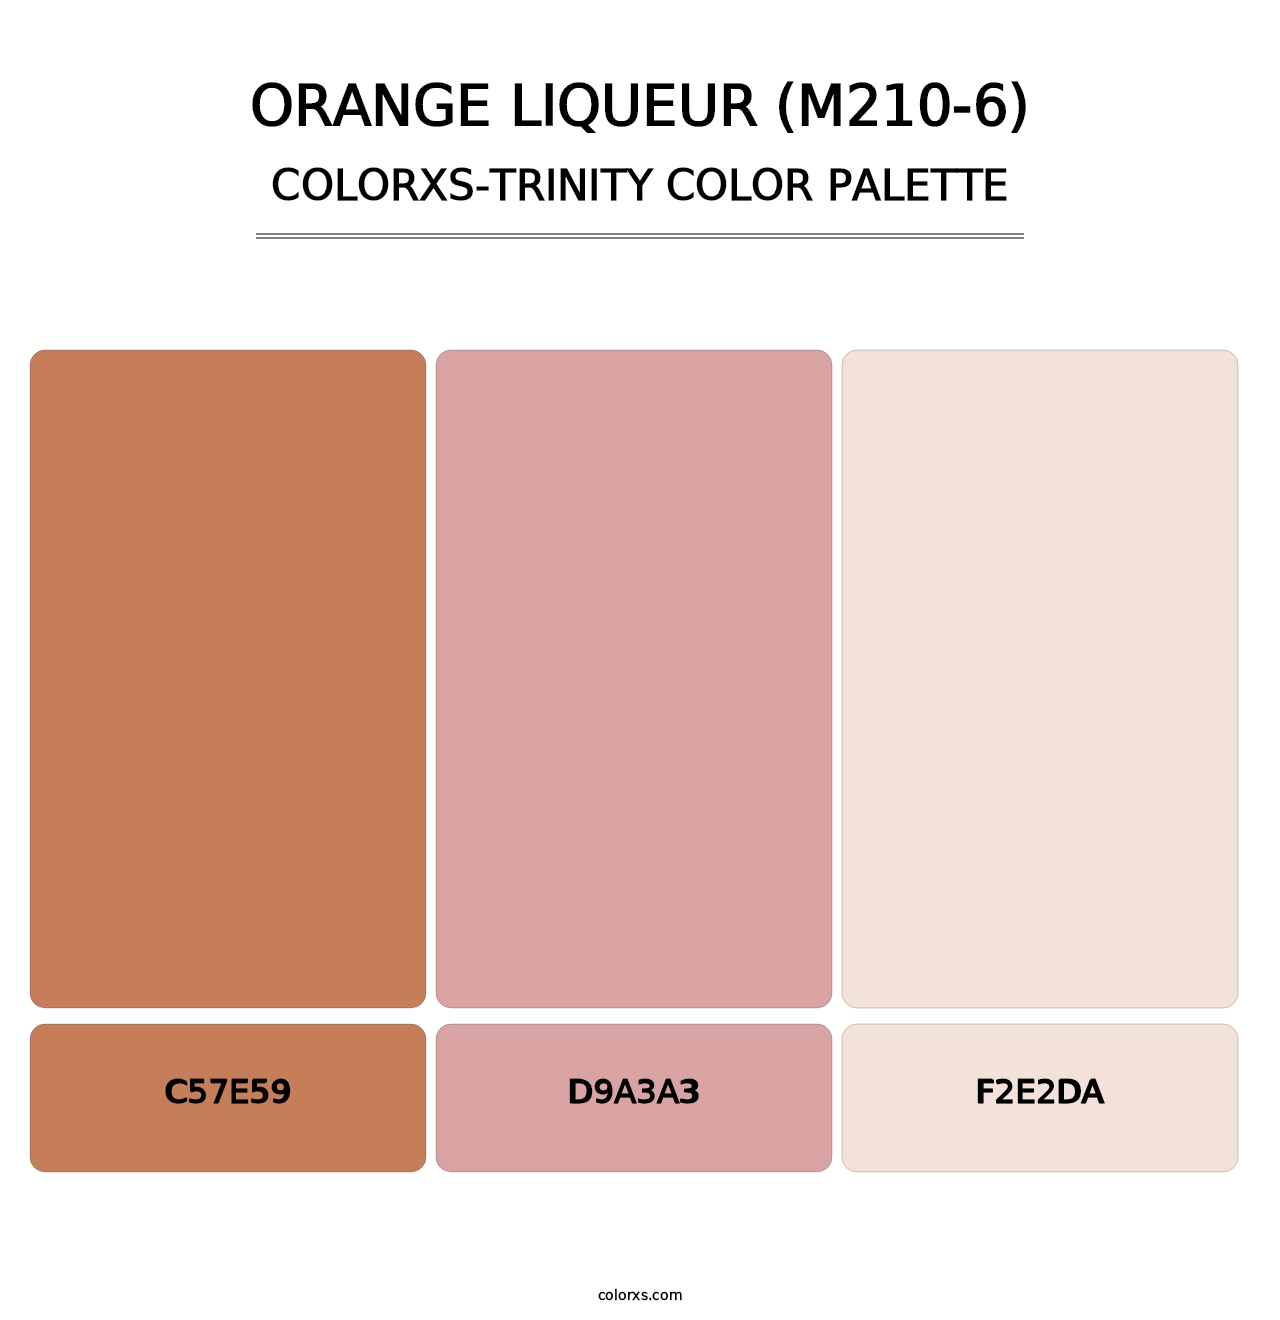 Orange Liqueur (M210-6) - Colorxs Trinity Palette